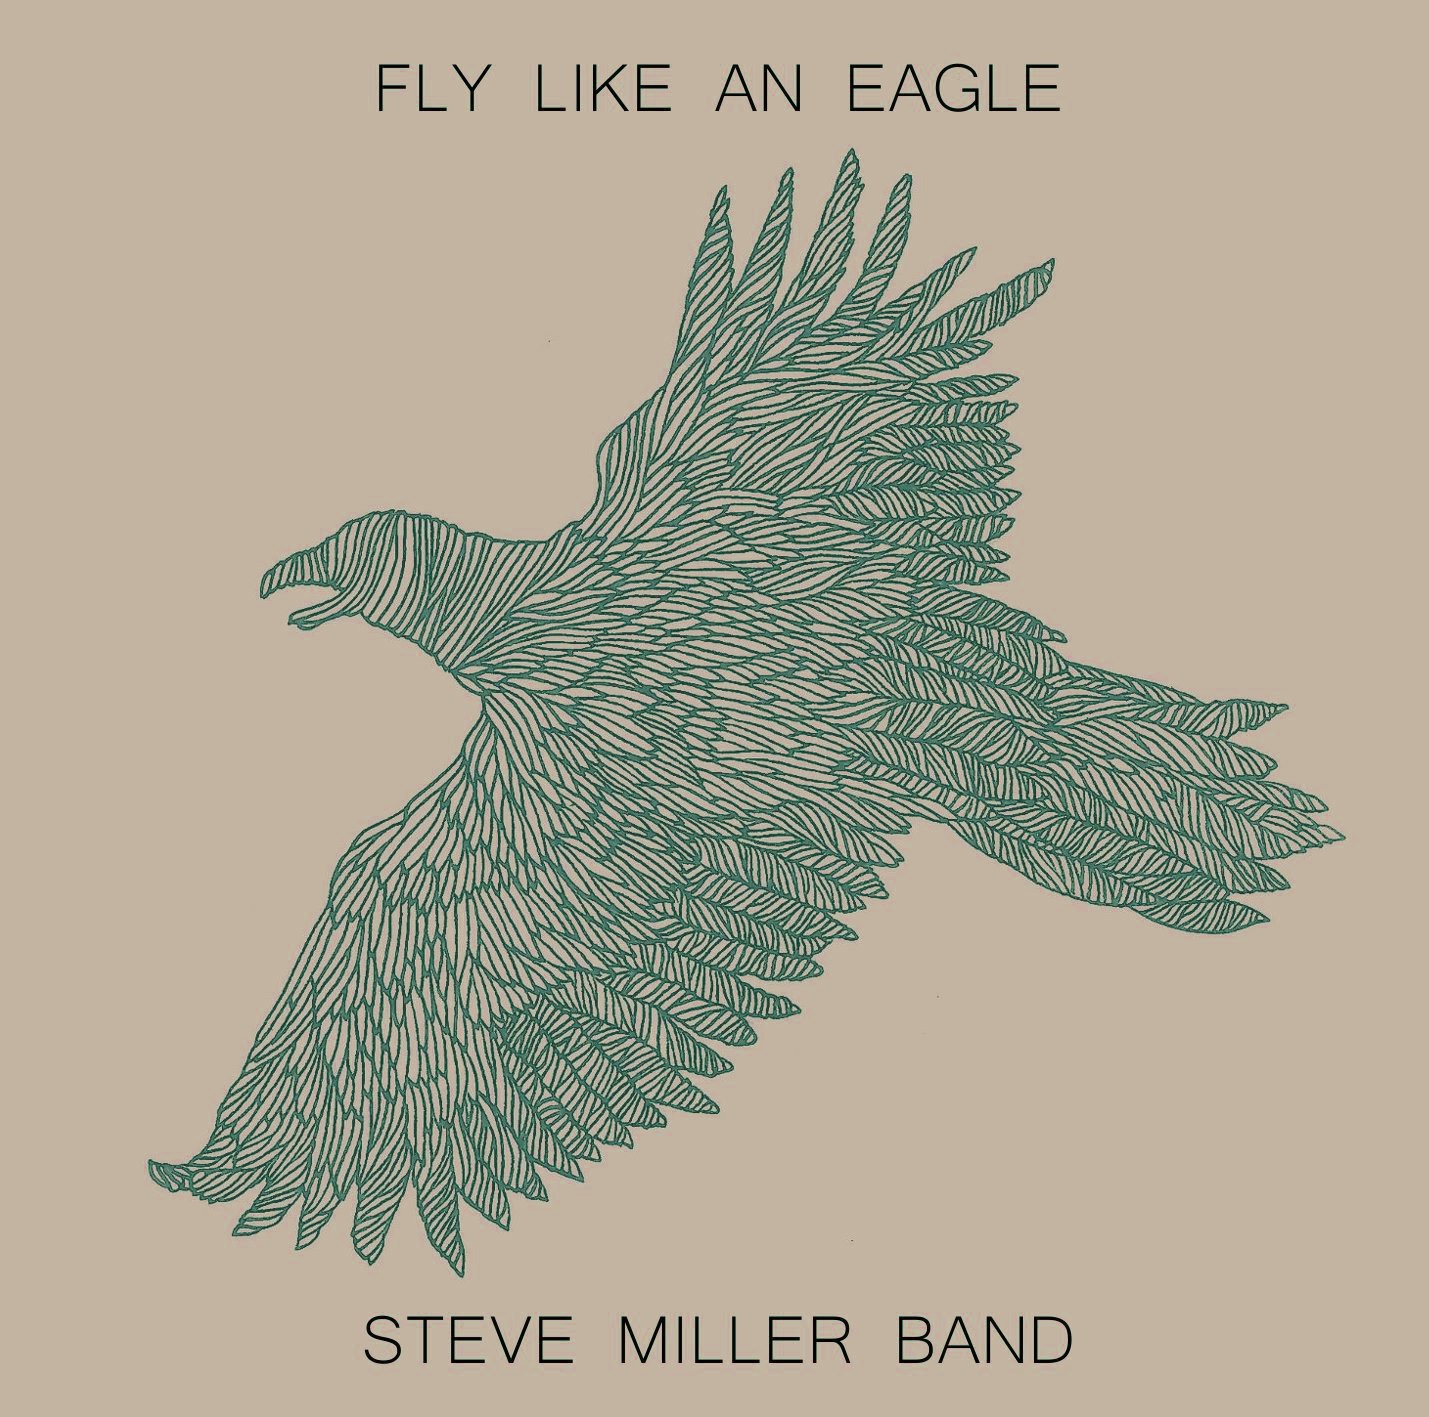 Like flying. Steve Miller Band Fly like an Eagle. Fly like an Eagle группа. Seal Fly like an Eagle. Steve Miller Band Fly like an Eagle LP.